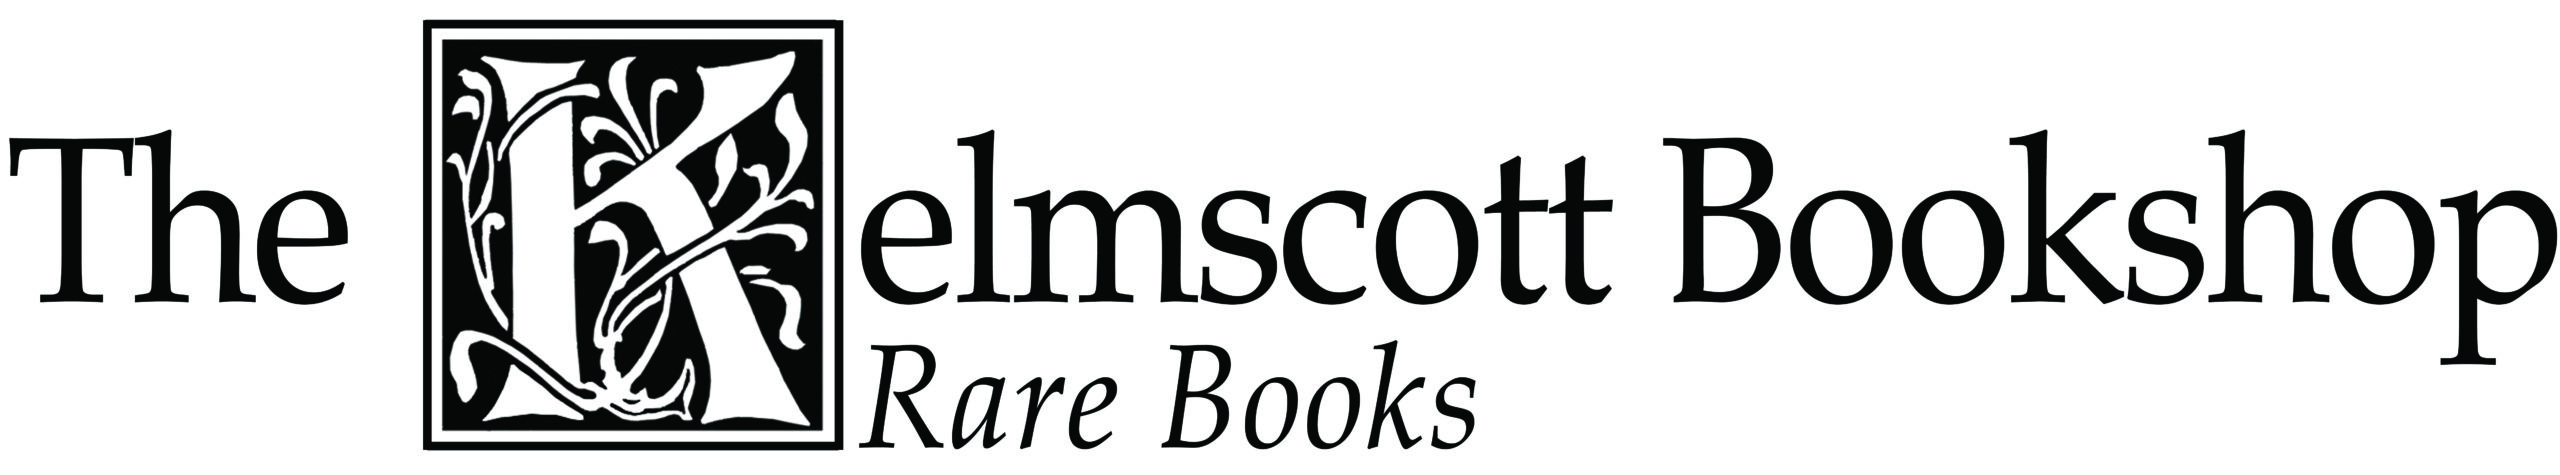 The Kelmscott Bookshop